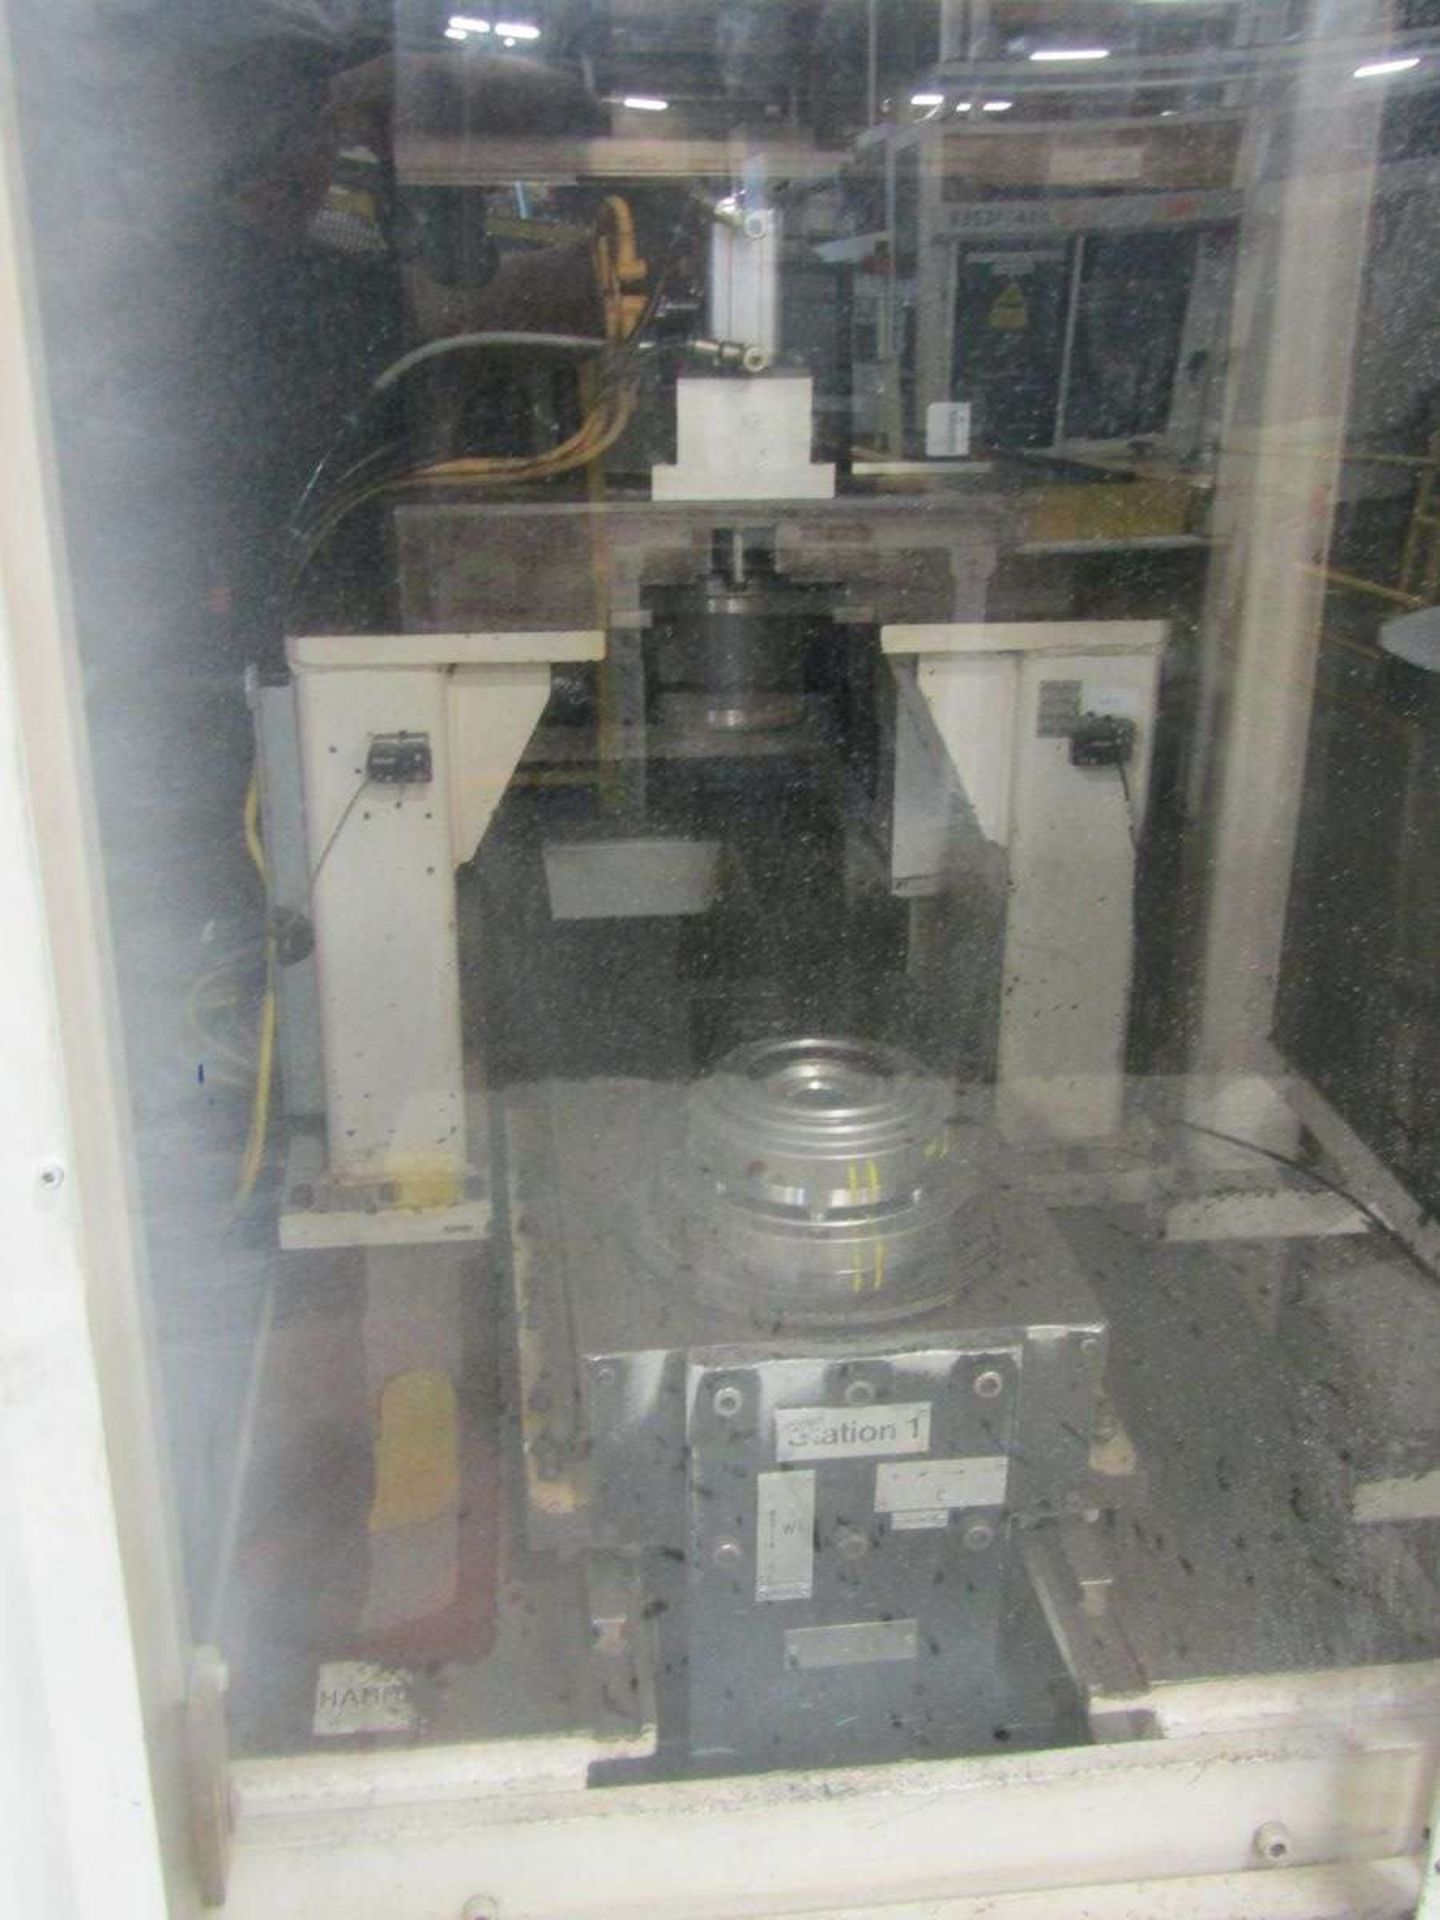 2002 Emag/Arnold LASERWELDING MACHINE Dual Cell Laser Welding Machine - Image 4 of 21